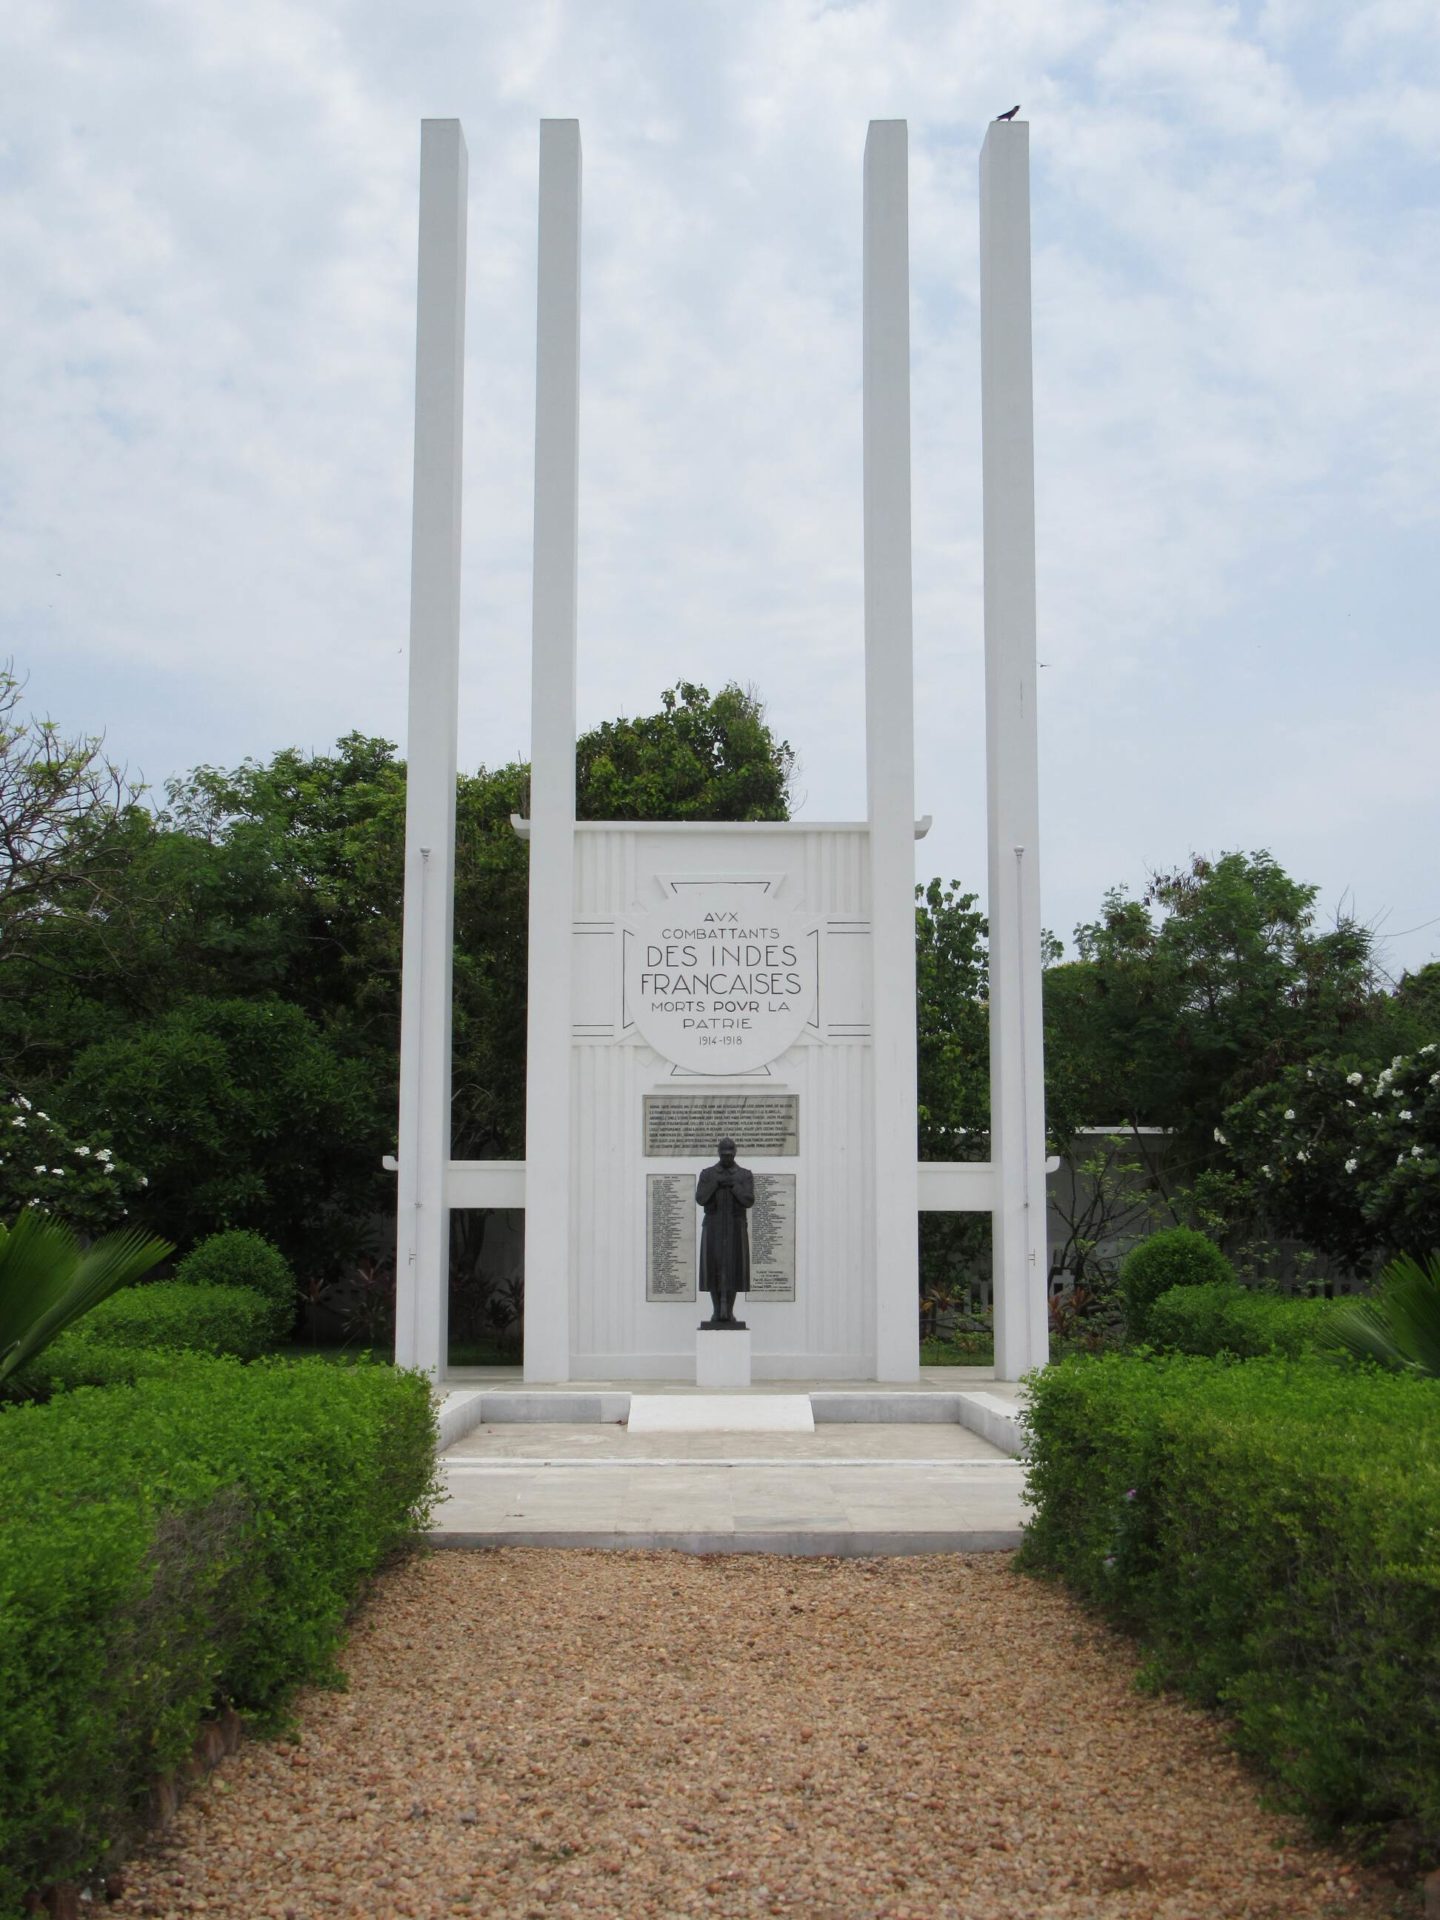 Das Denkmal für die indischen Soldaten im Ersten Weltkrieg